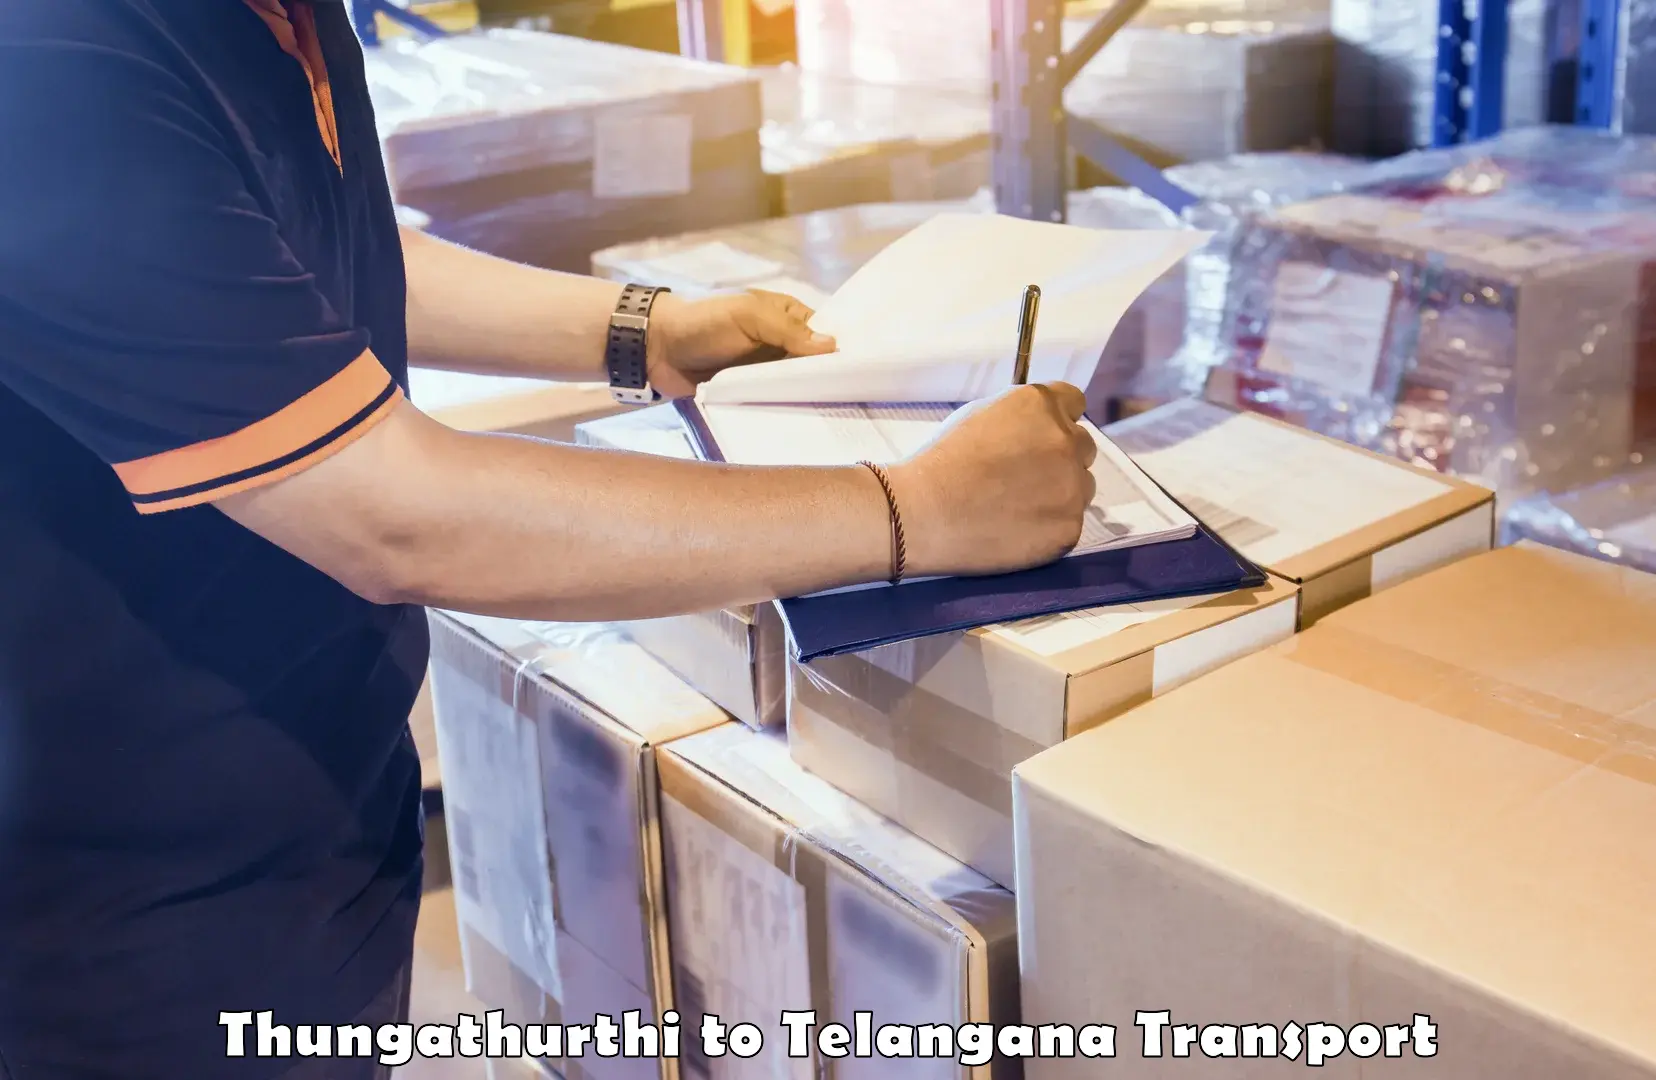 Commercial transport service Thungathurthi to Adilabad